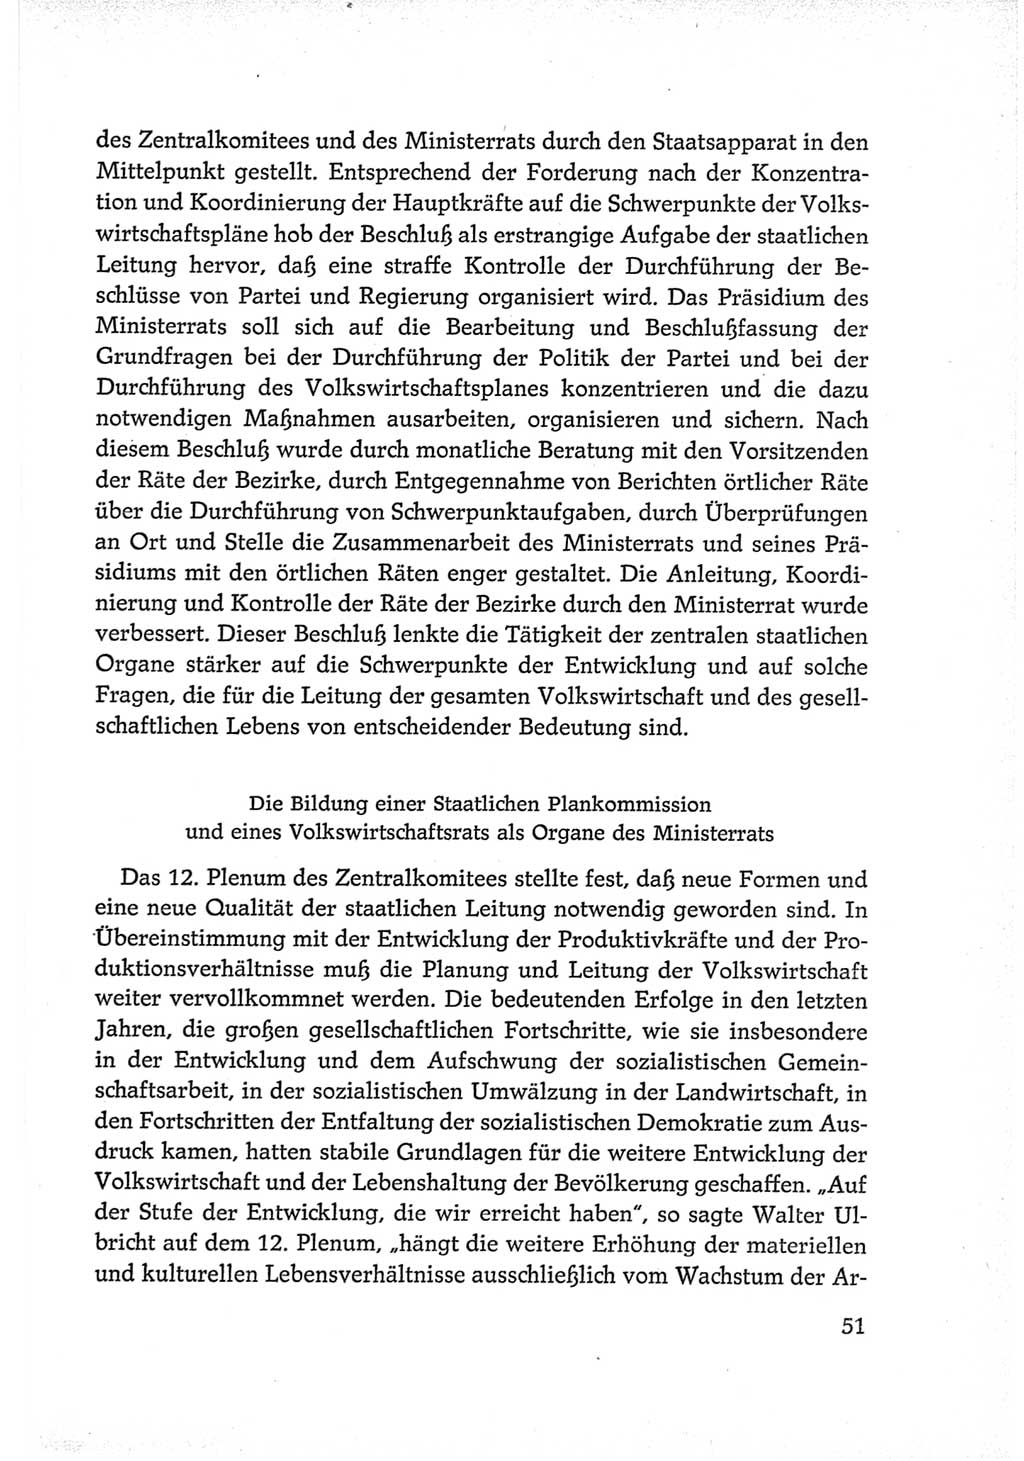 Protokoll der Verhandlungen des Ⅵ. Parteitages der Sozialistischen Einheitspartei Deutschlands (SED) [Deutsche Demokratische Republik (DDR)] 1963, Band Ⅳ, Seite 51 (Prot. Verh. Ⅵ. PT SED DDR 1963, Bd. Ⅳ, S. 51)